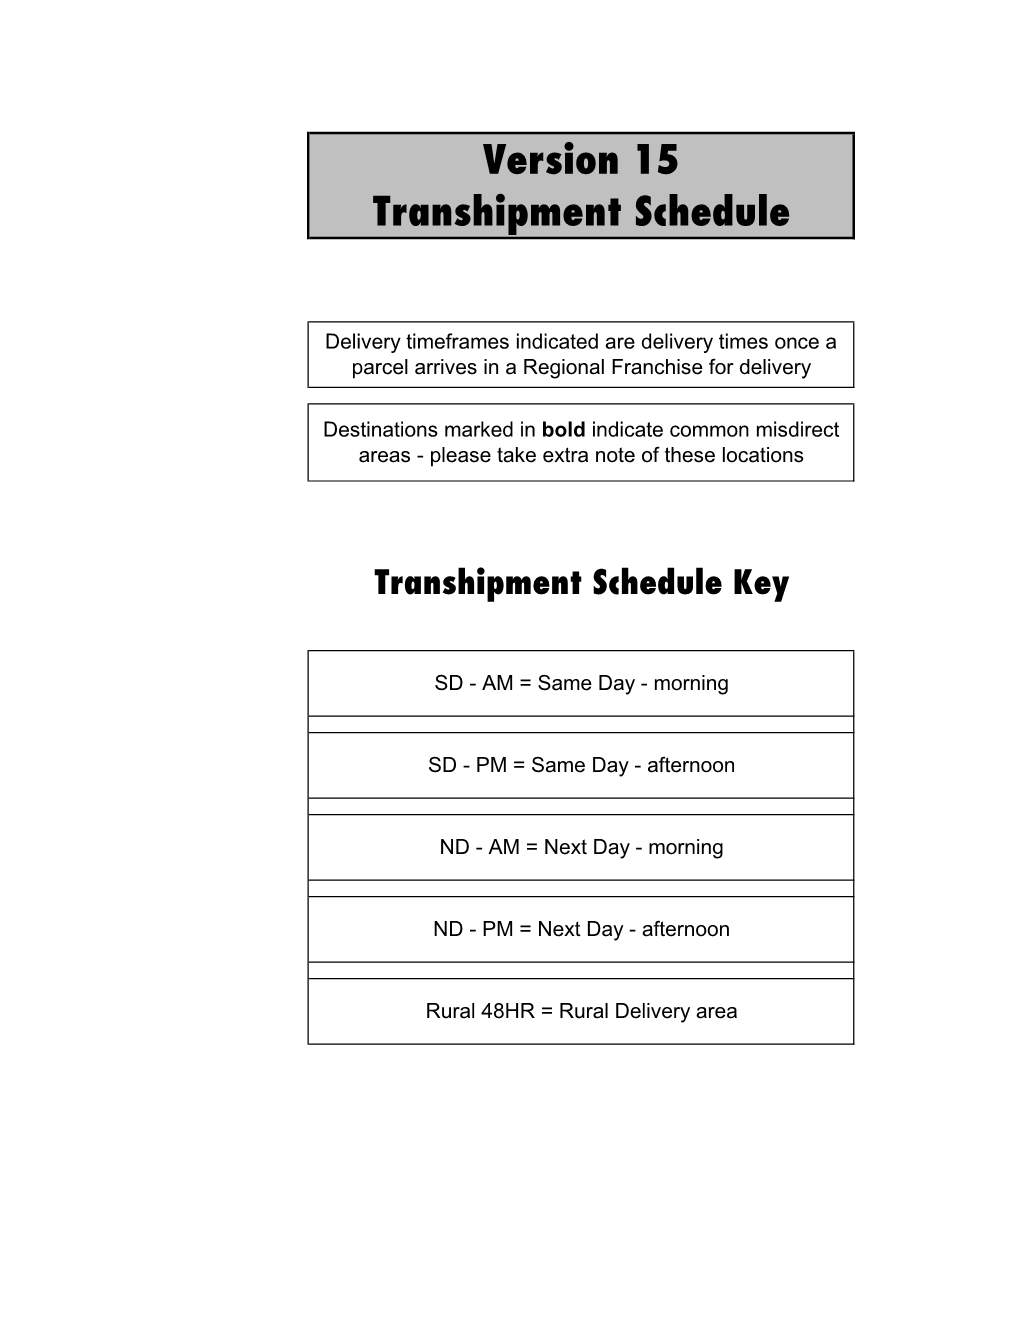 Version 15 Transhipment Schedule